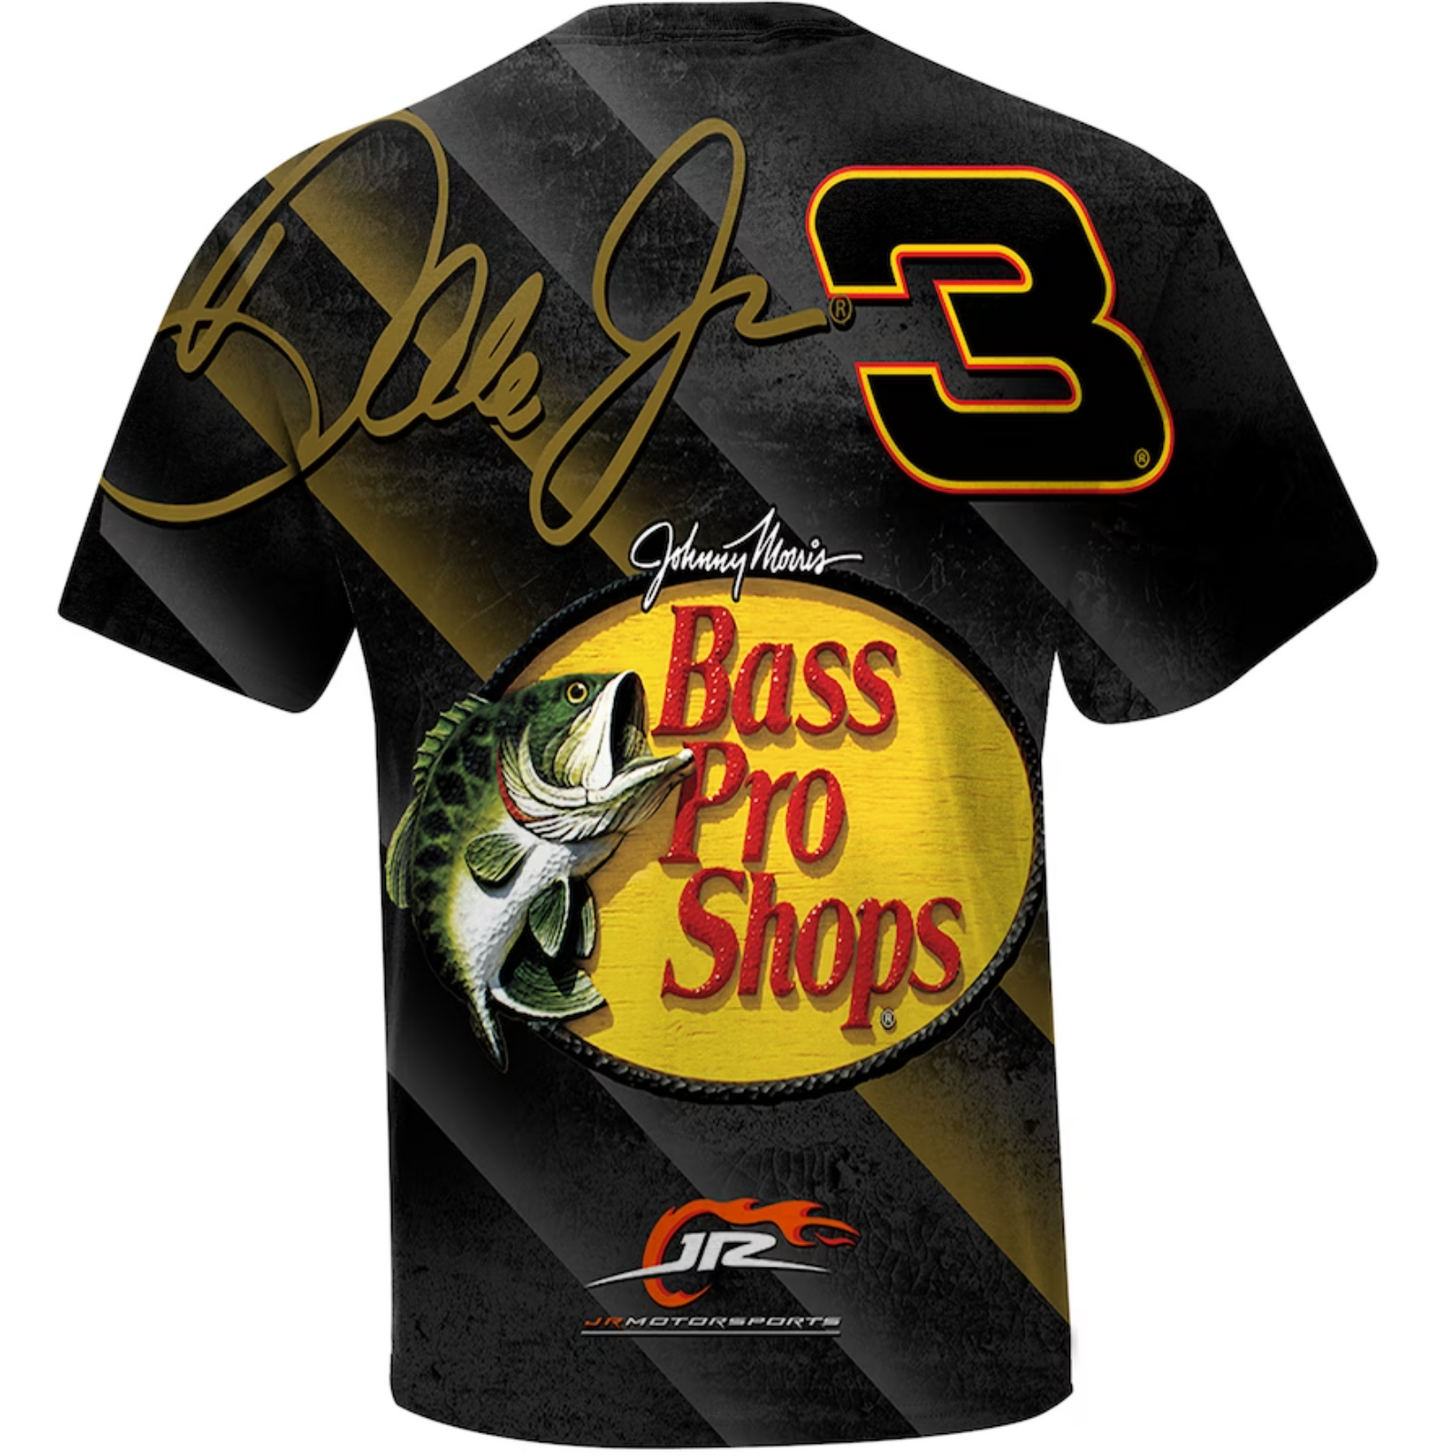 NASCAR T-Shirt Dale Earnhardt Jr. JR Motorsports Official Team Apparel Black Bass Pro Shops Total Print